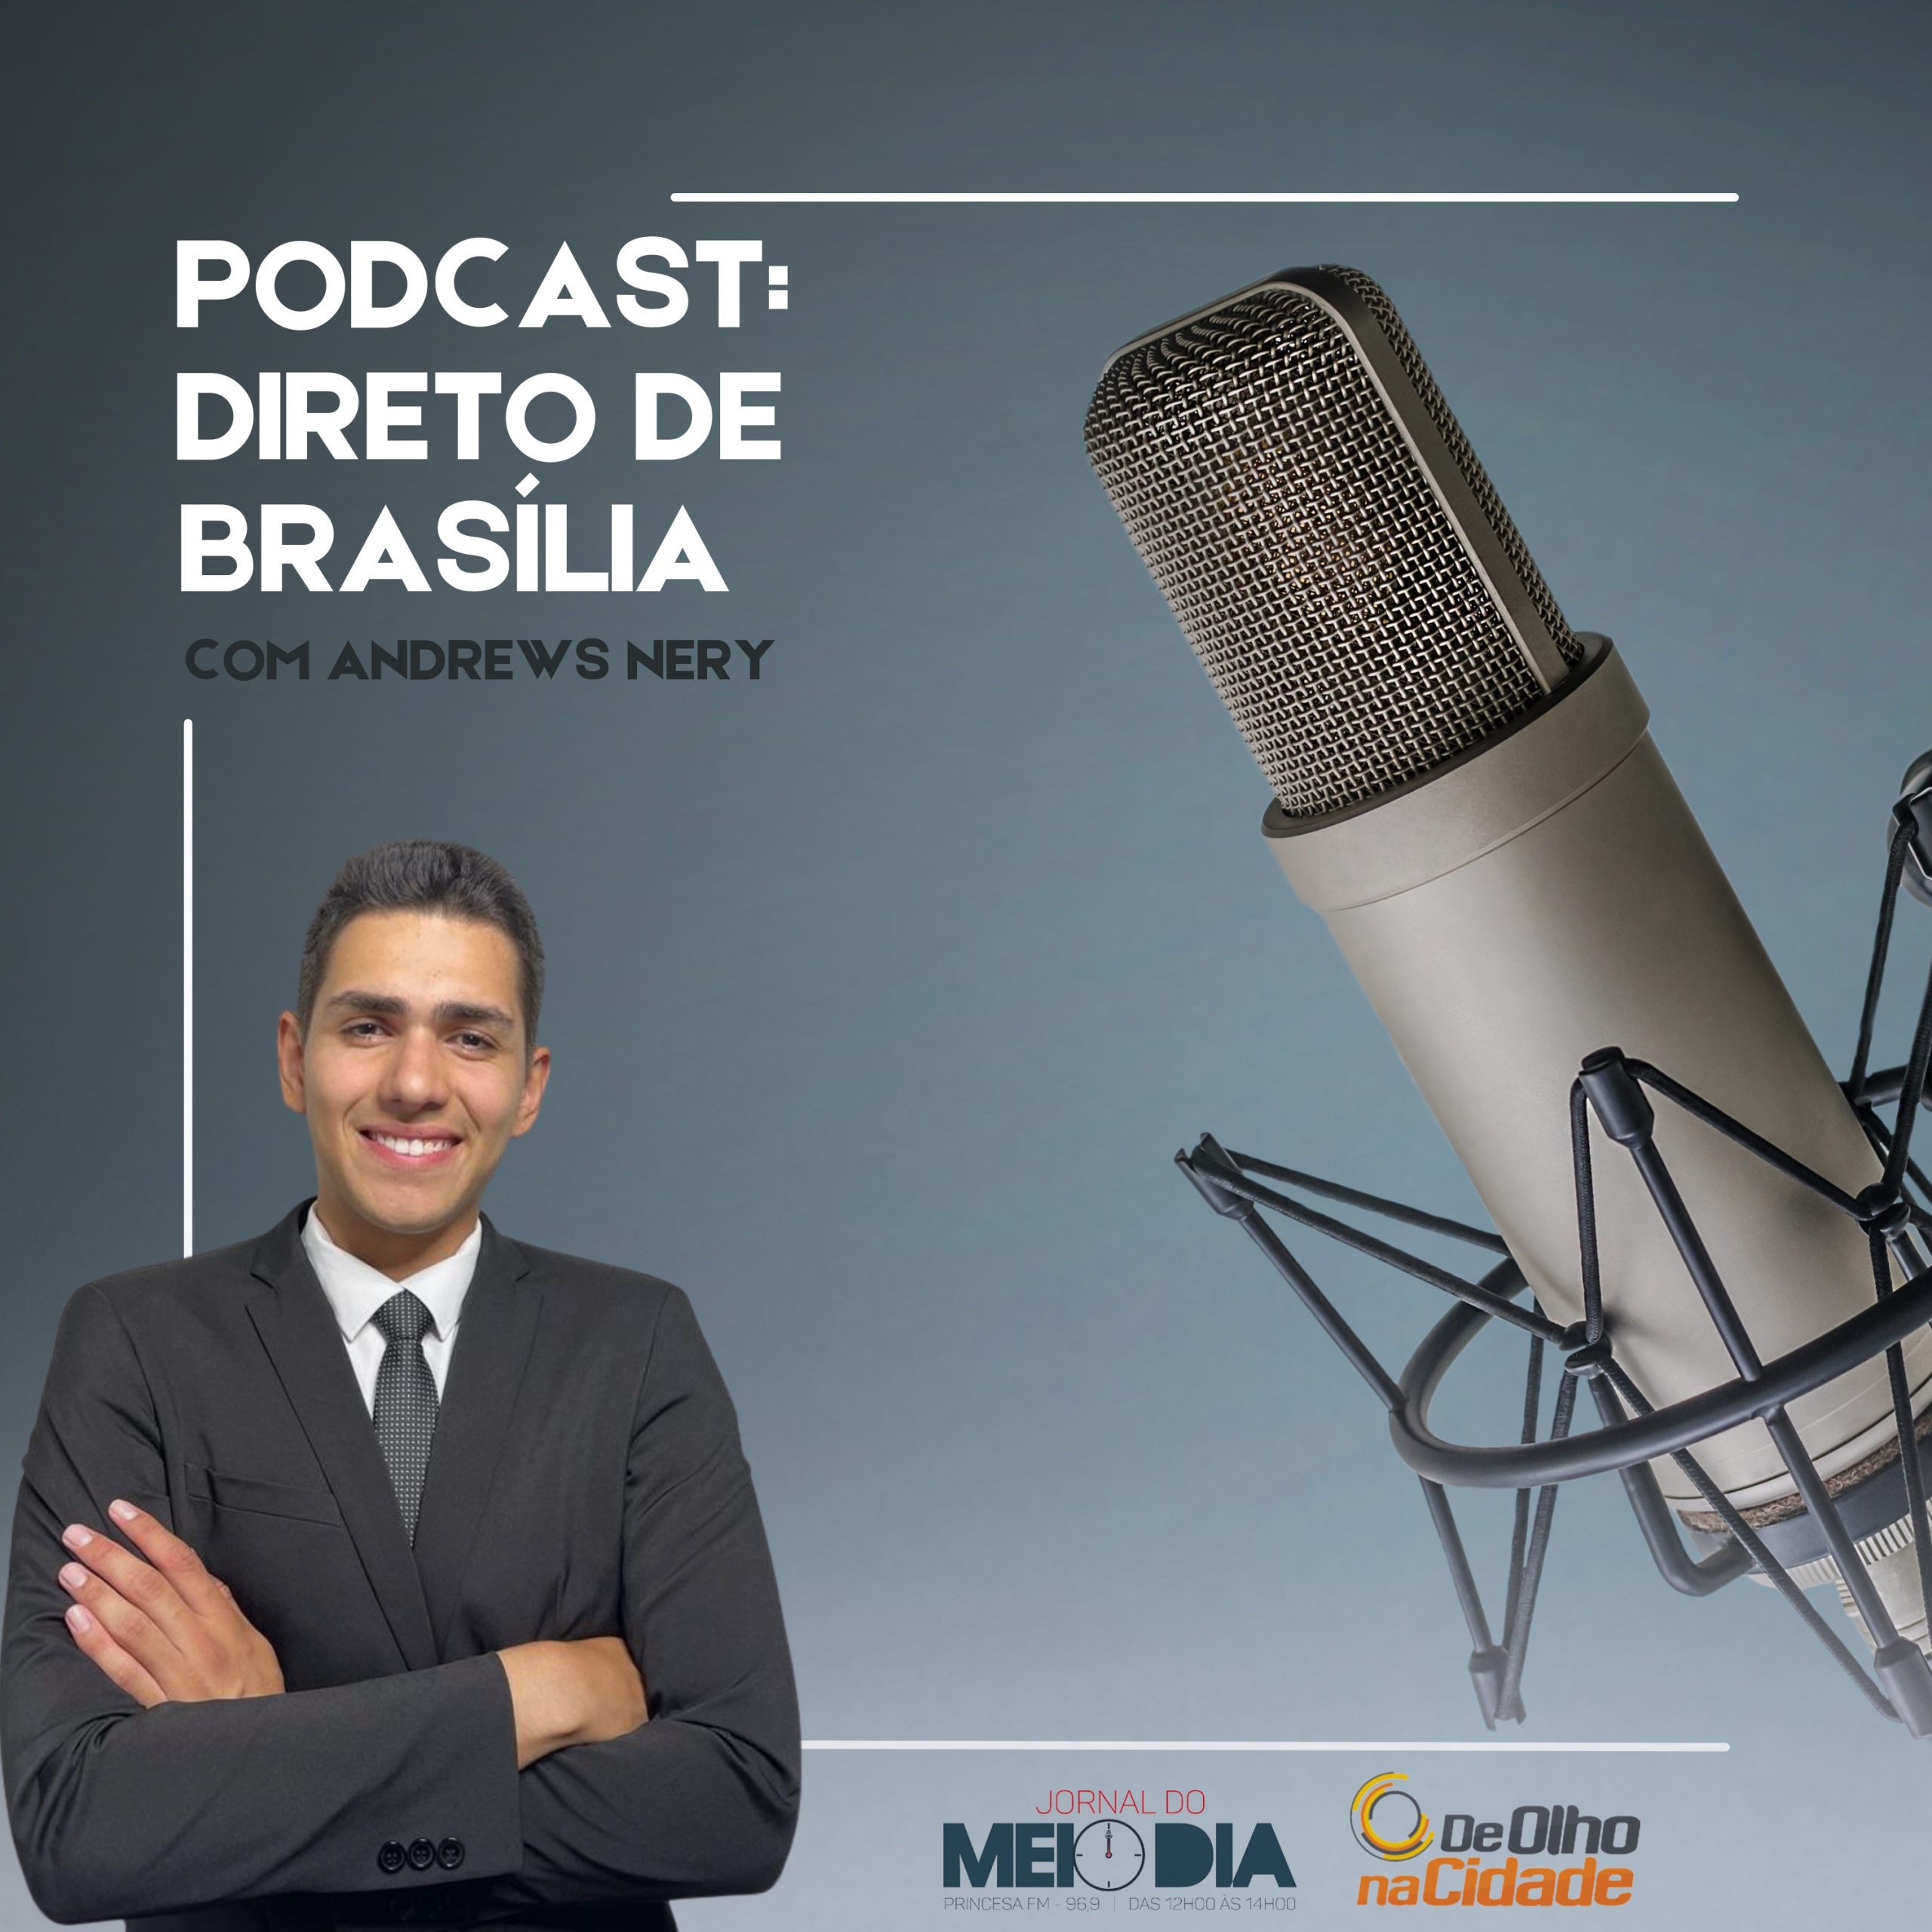 Podcast: Direto de Brasília com Andrews Nery (29/03) 